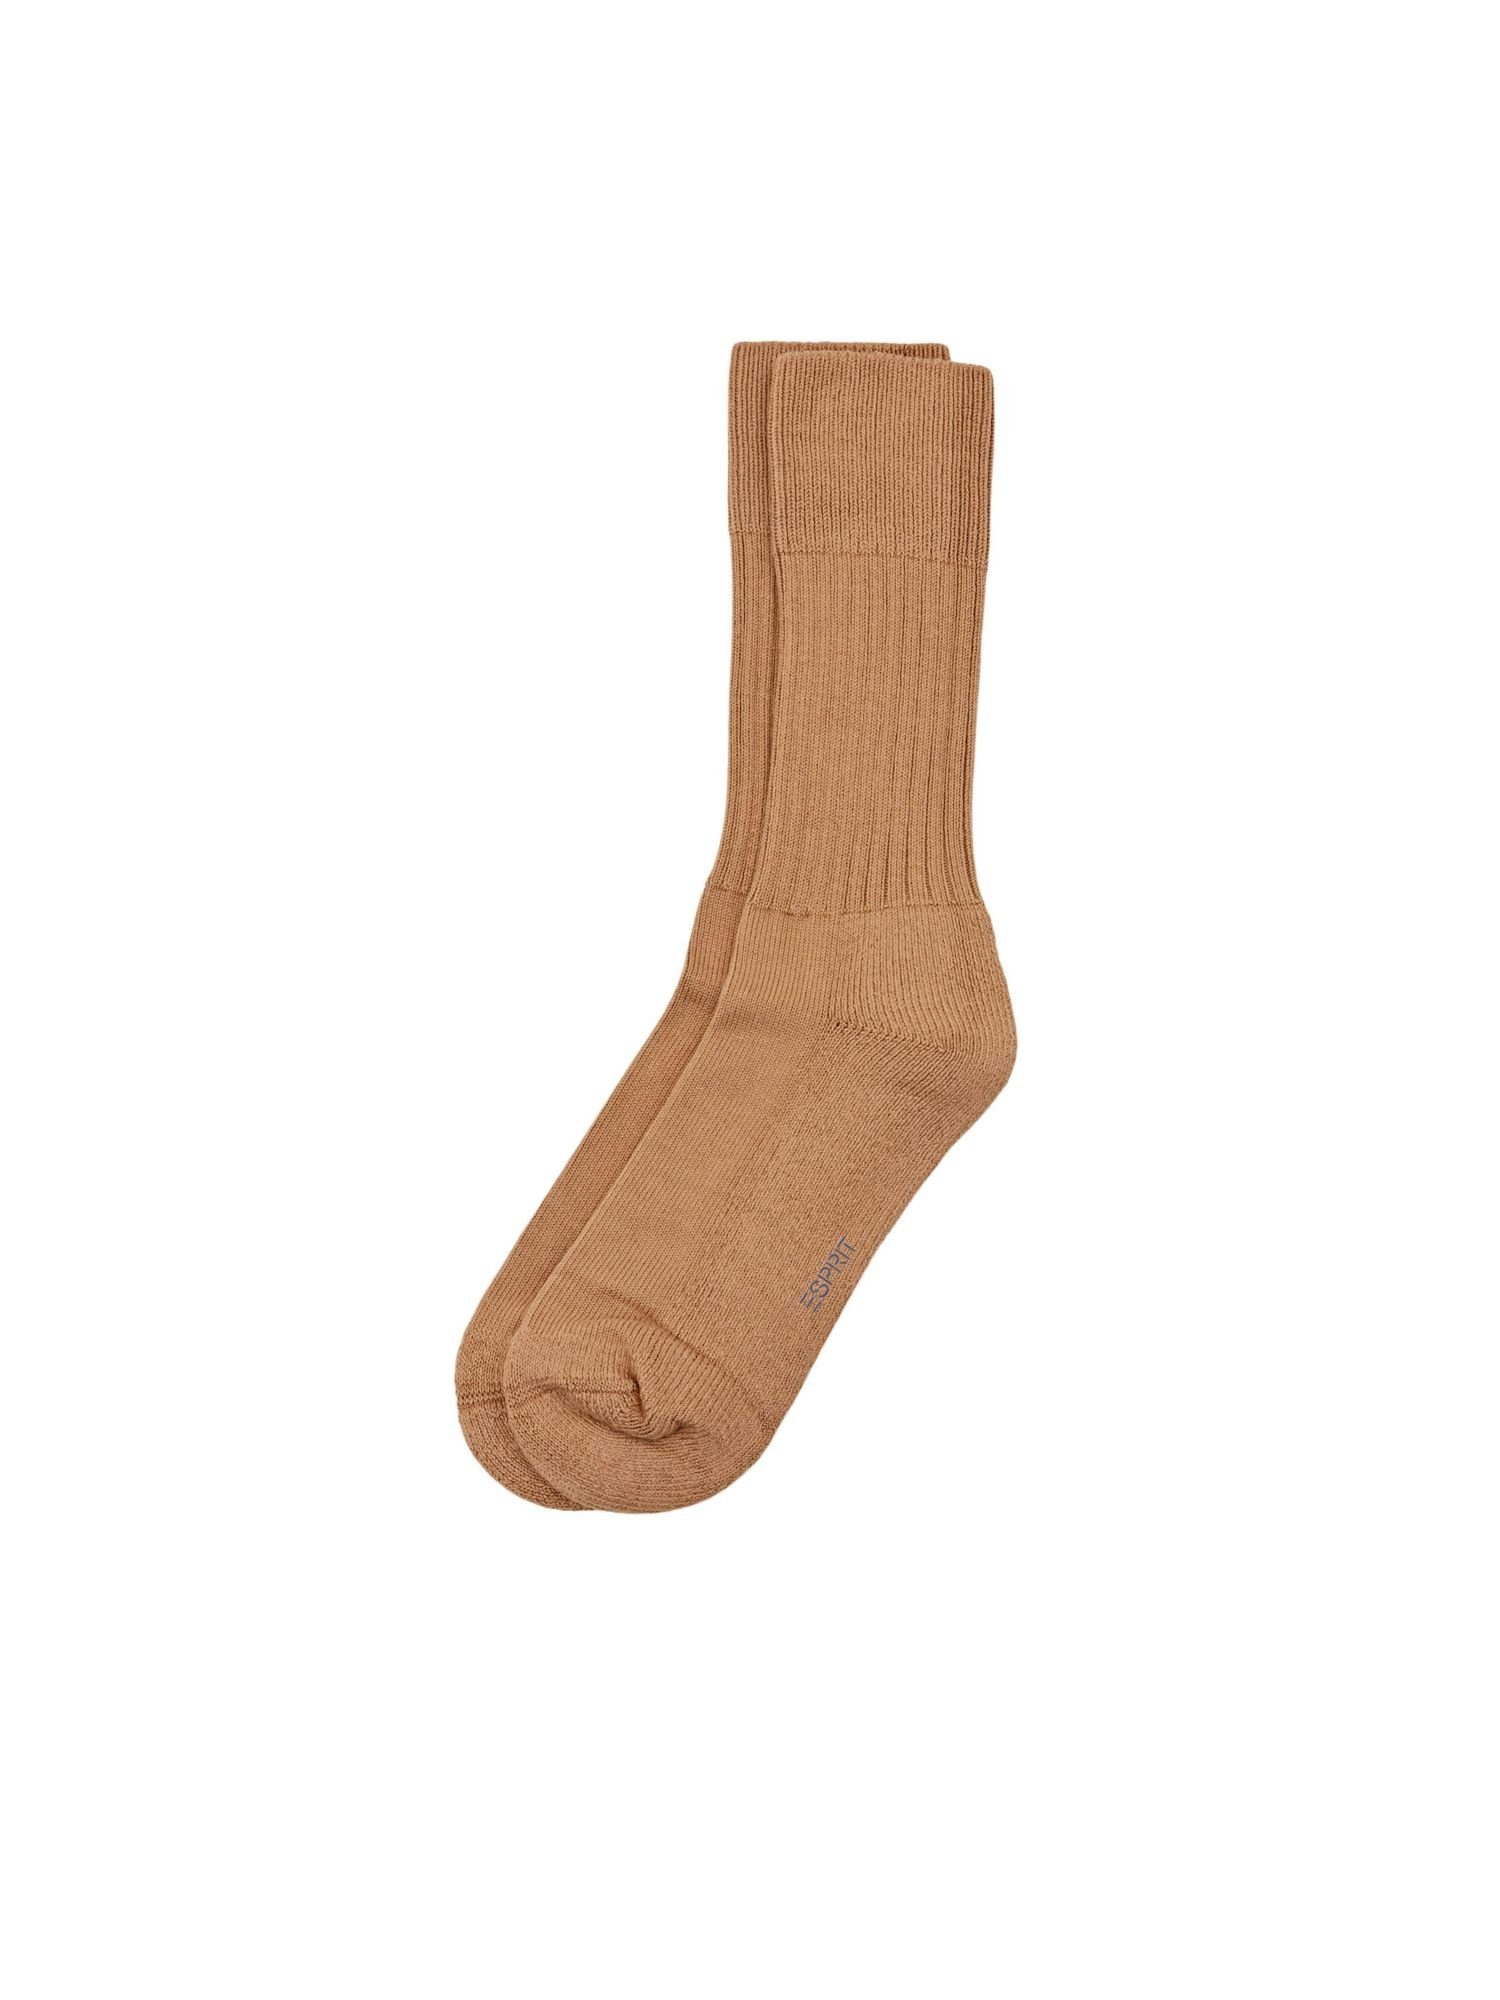 Esprit Socken Socken aus grobem Rippstrick CAMEL | Socken